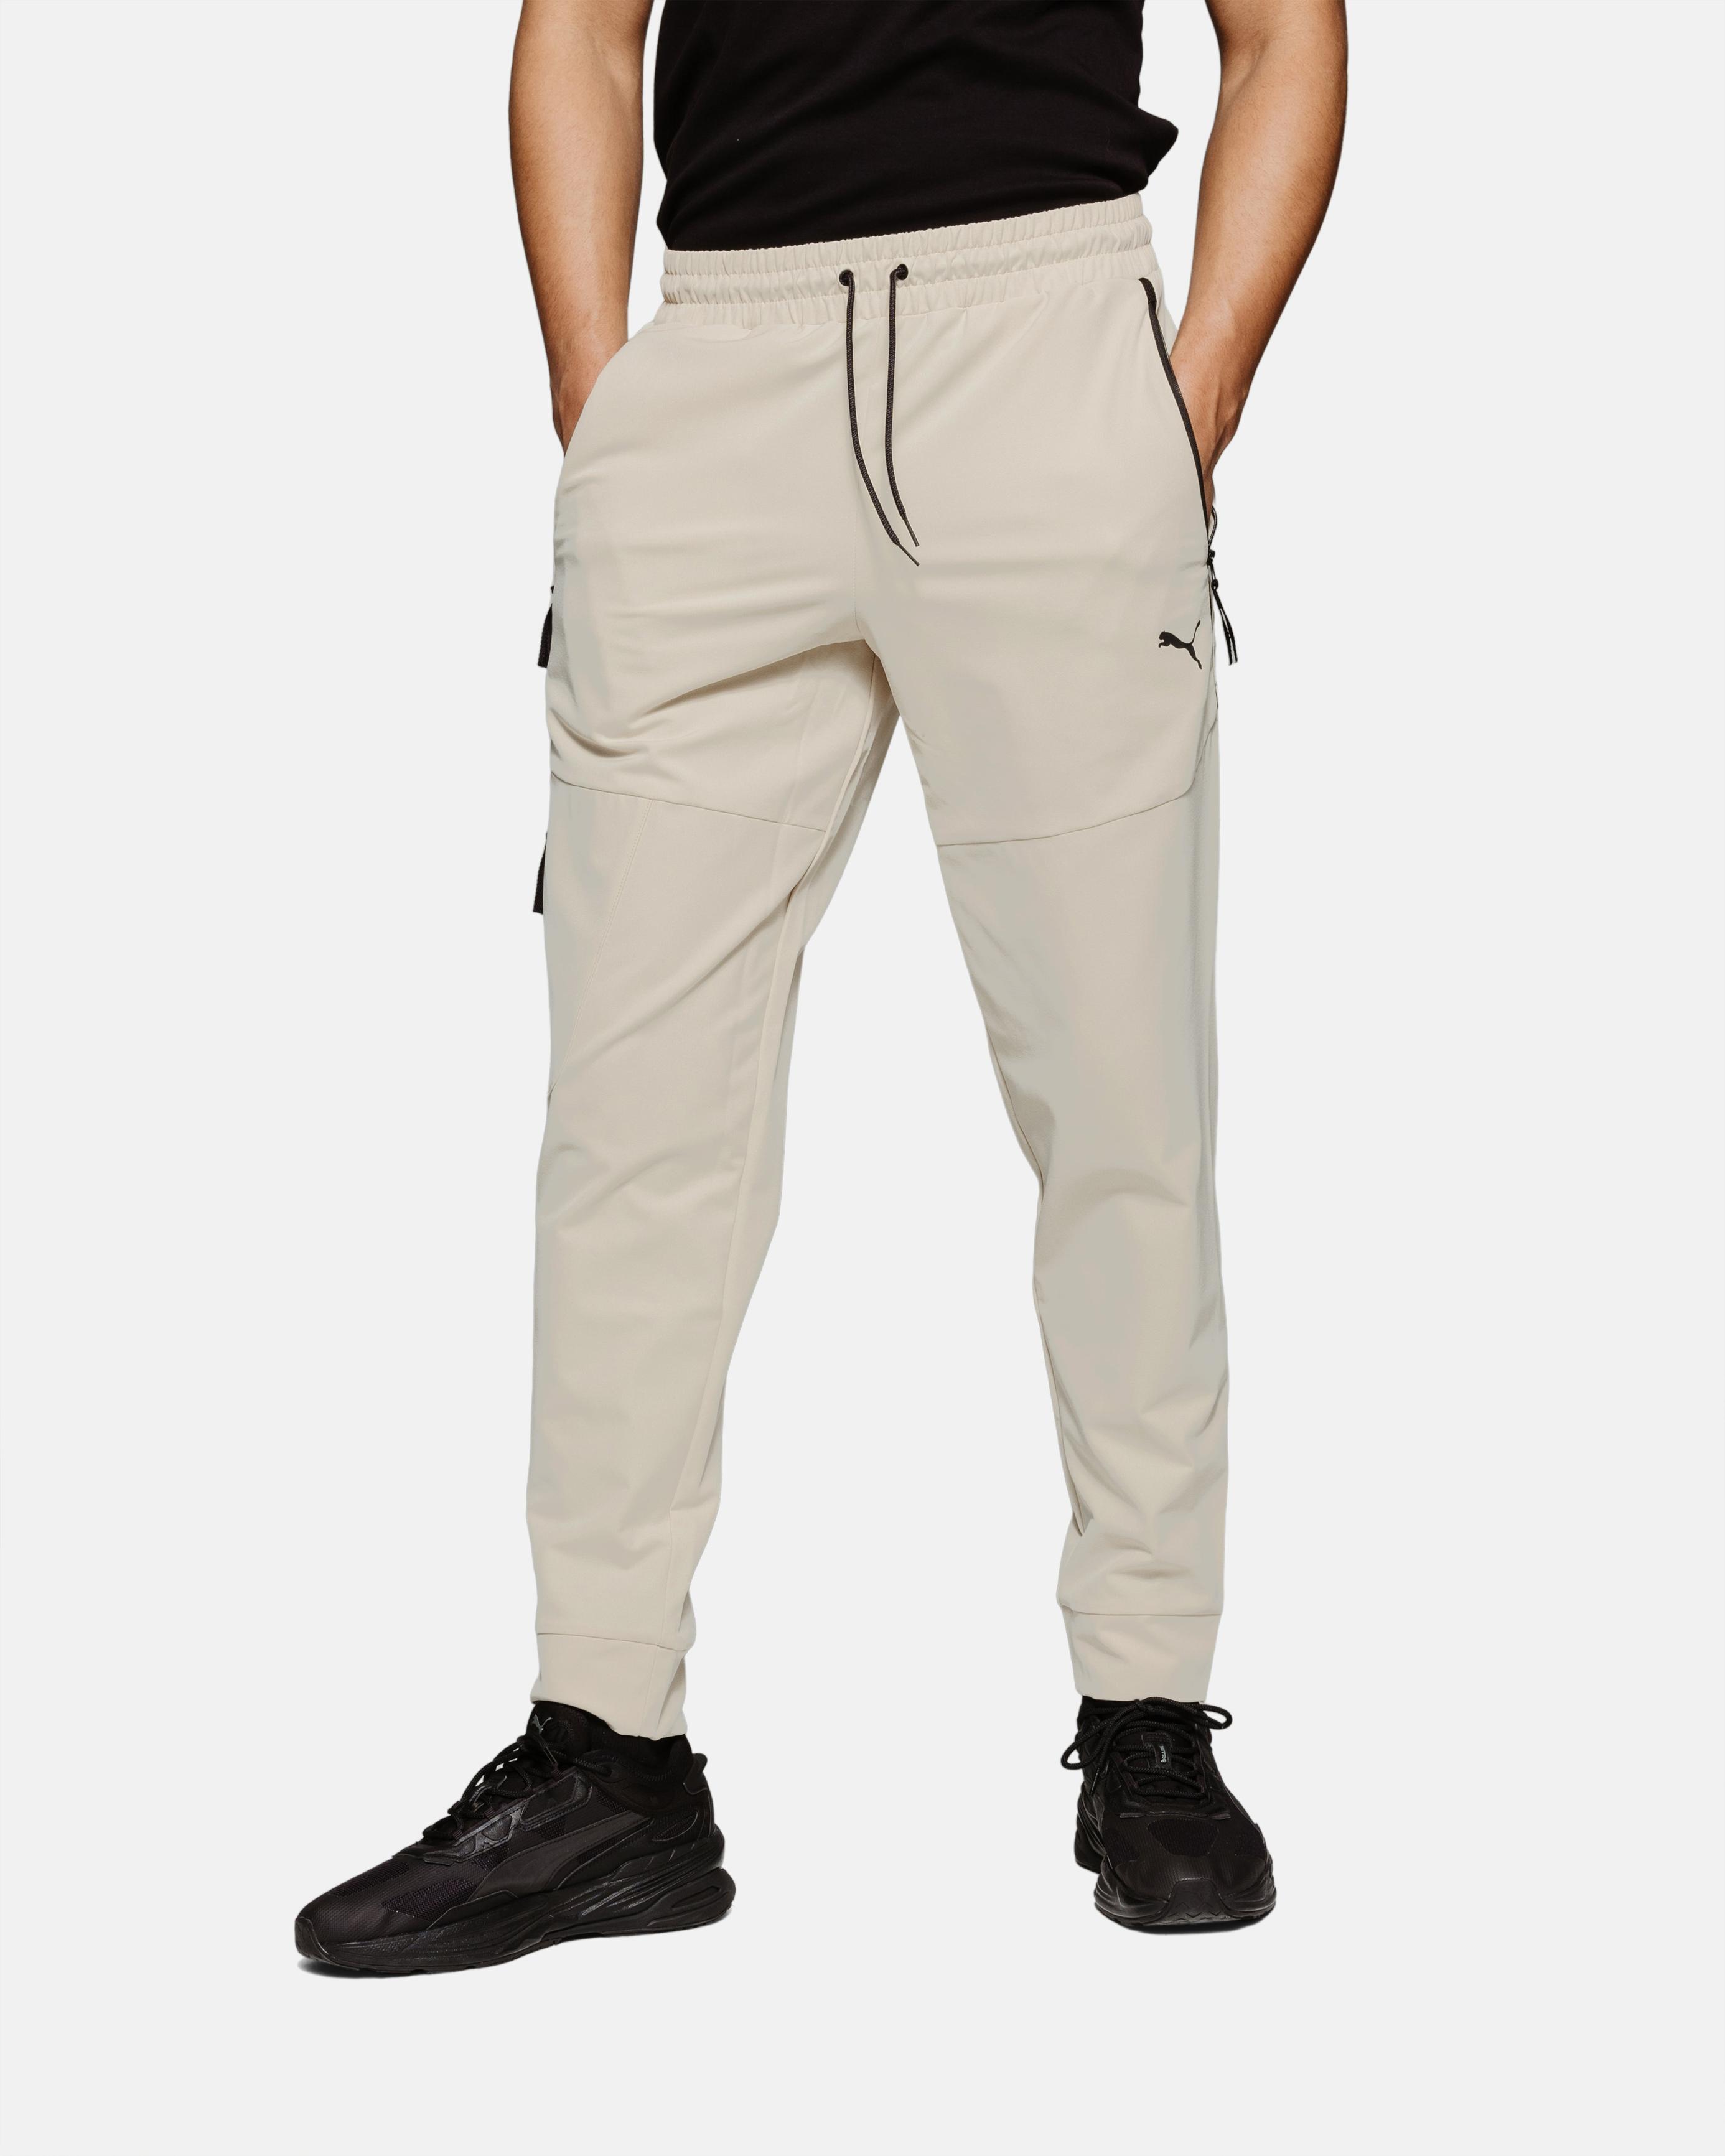 Pantalon Puma Tech - Beige                                        3               couleurs offre à 41,94€ sur Footkorner